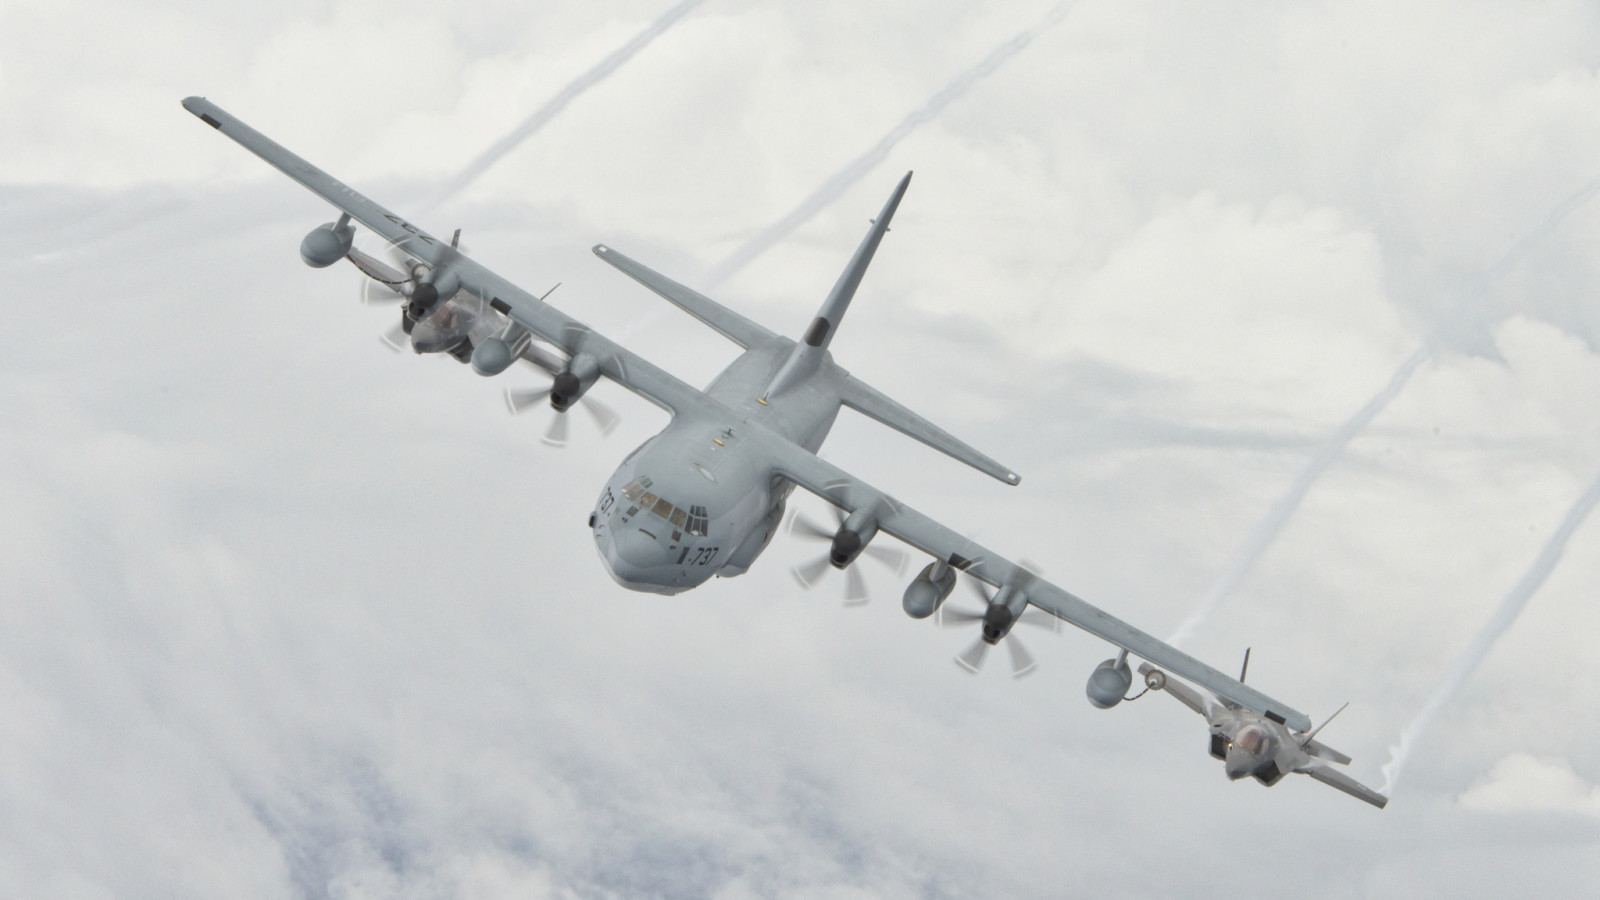 ท้องฟ้า, เครื่องบิน, การขนส่งทางทหาร, สู้, F-35B, Super Hercules, C-130J